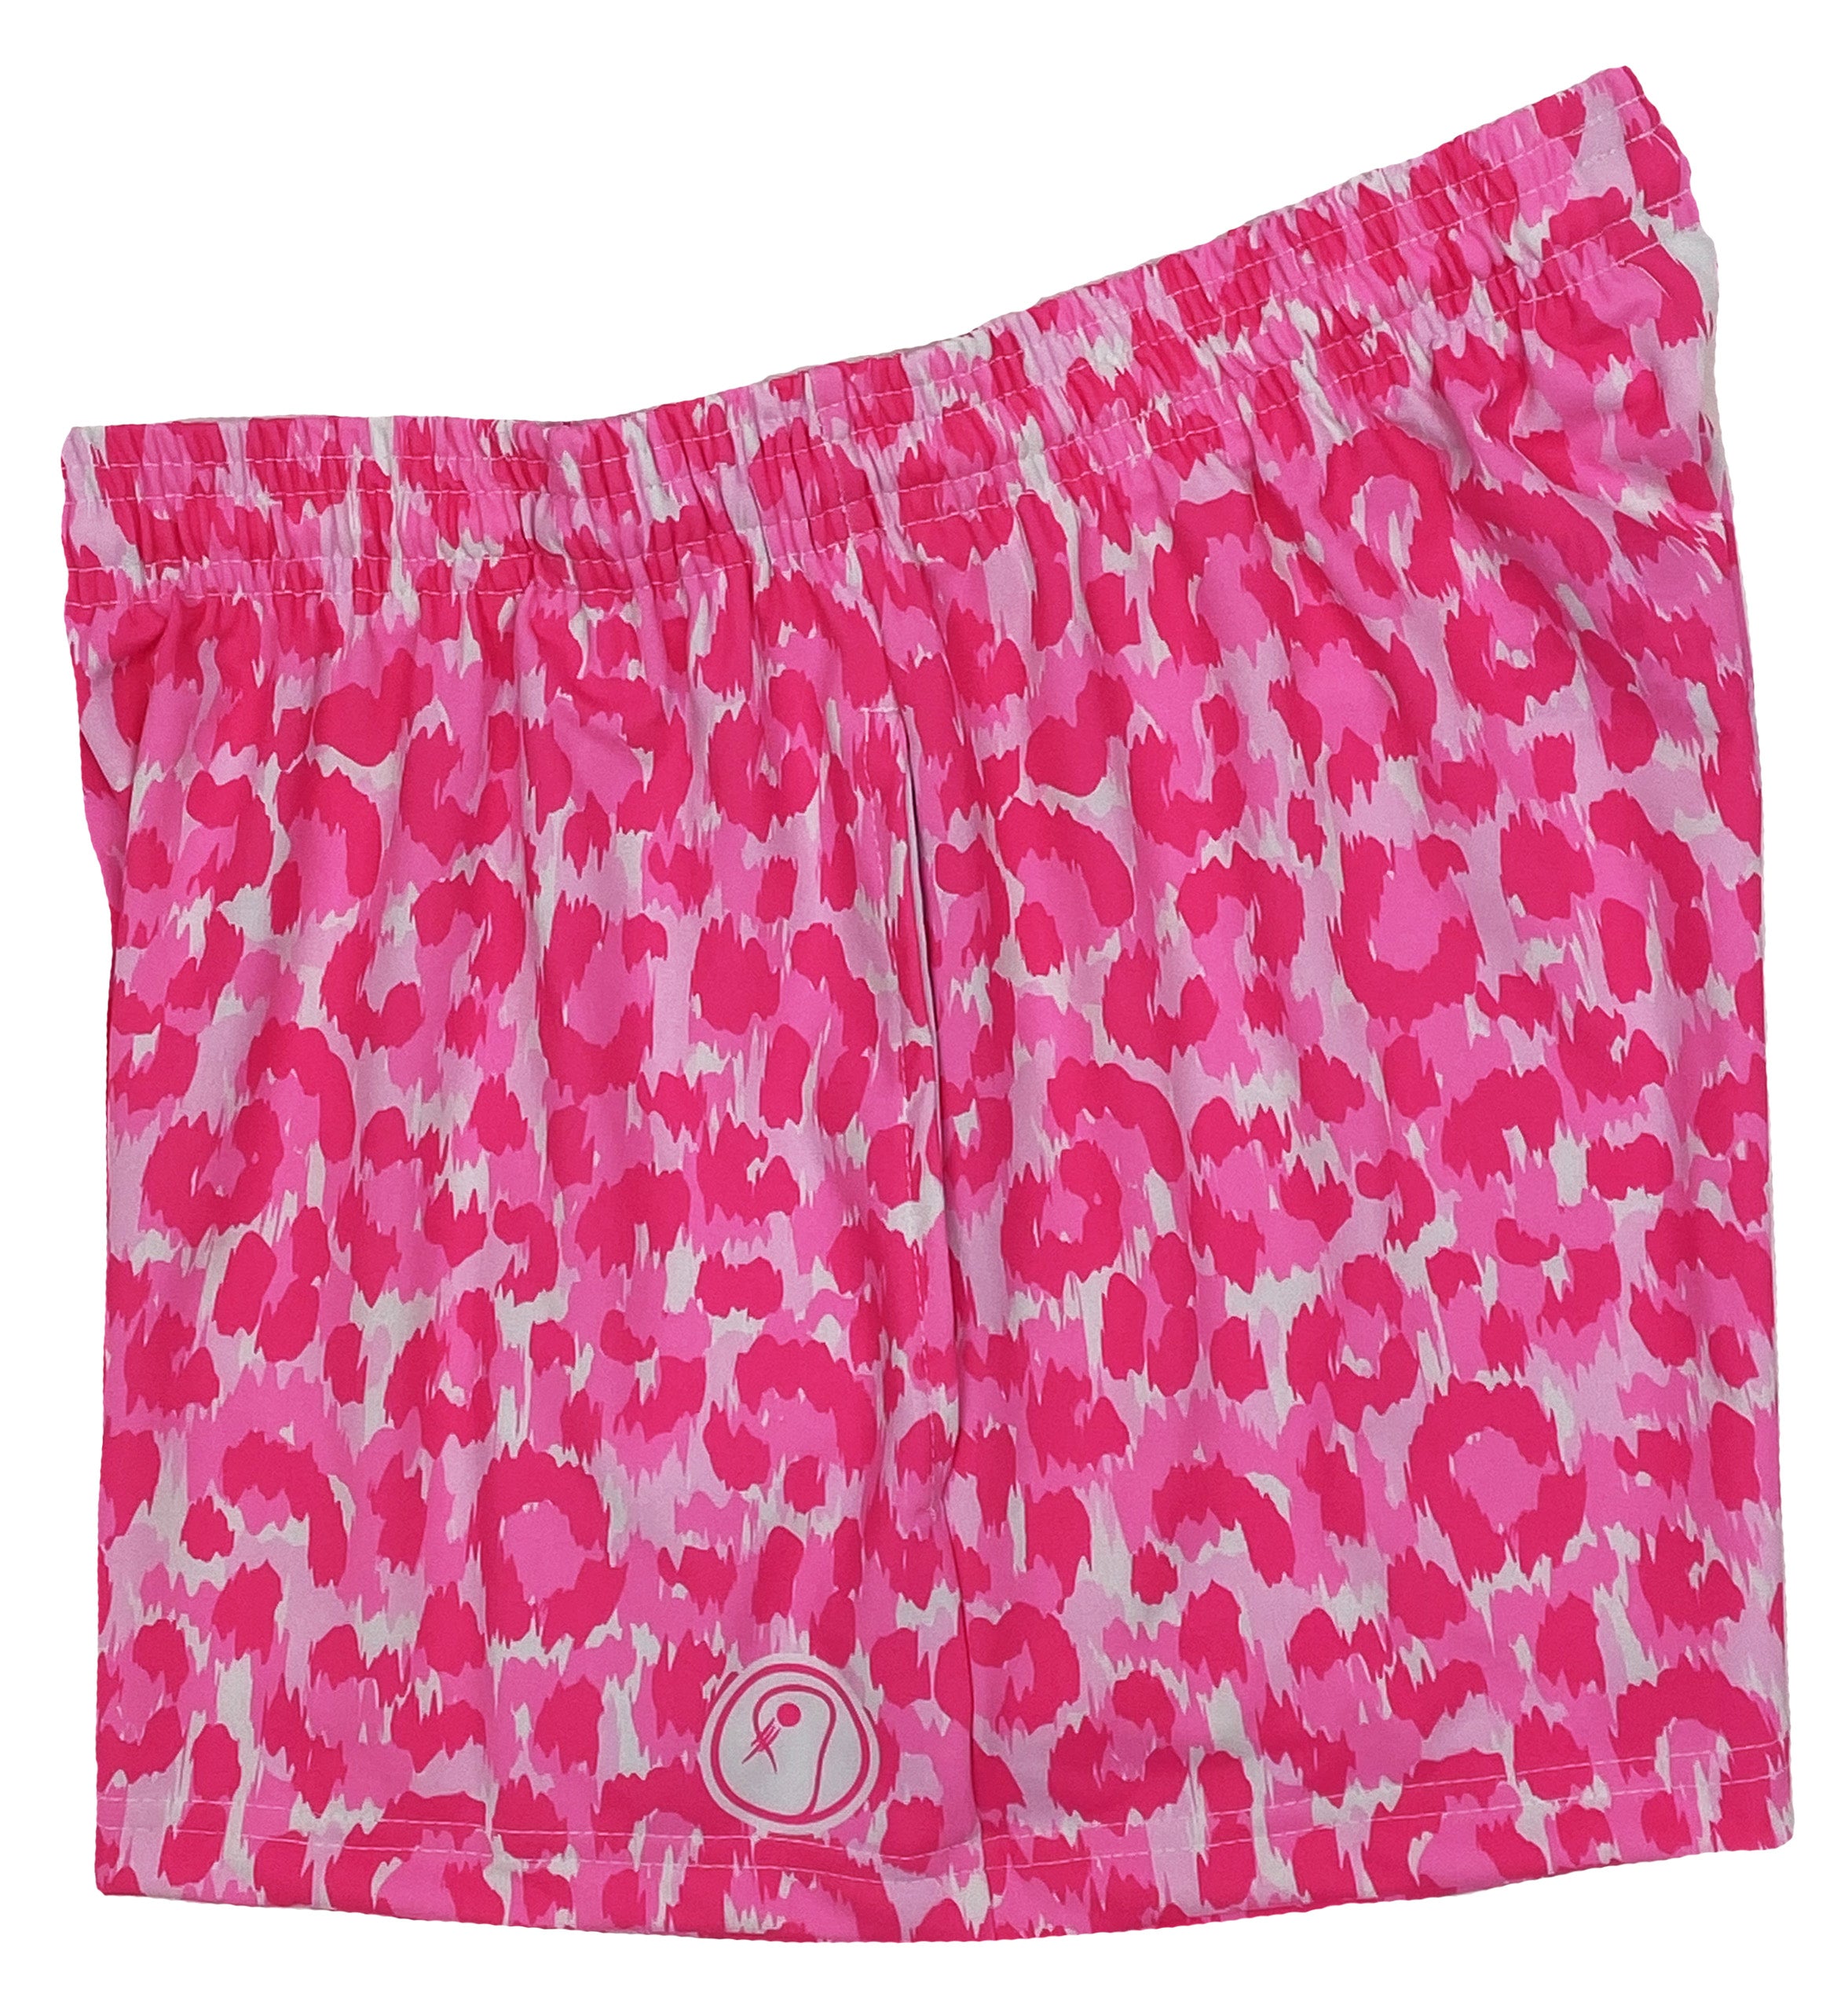 Womens Leopard Lacrosse Shorts - Pink